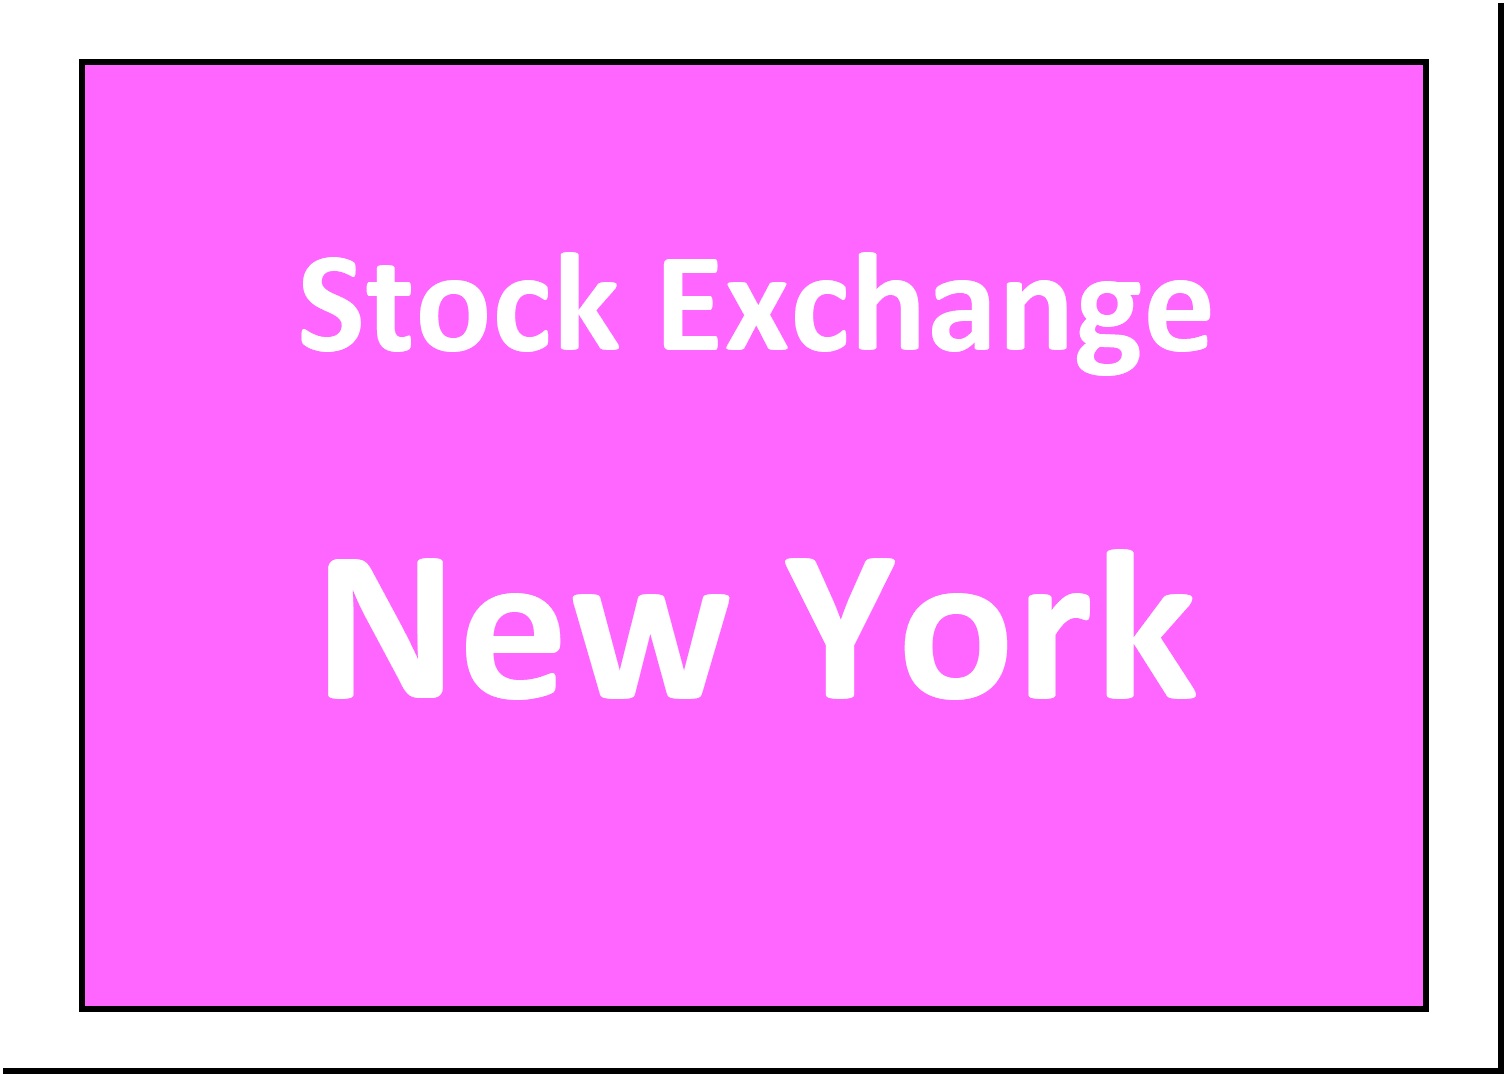 Stock Exchange New York